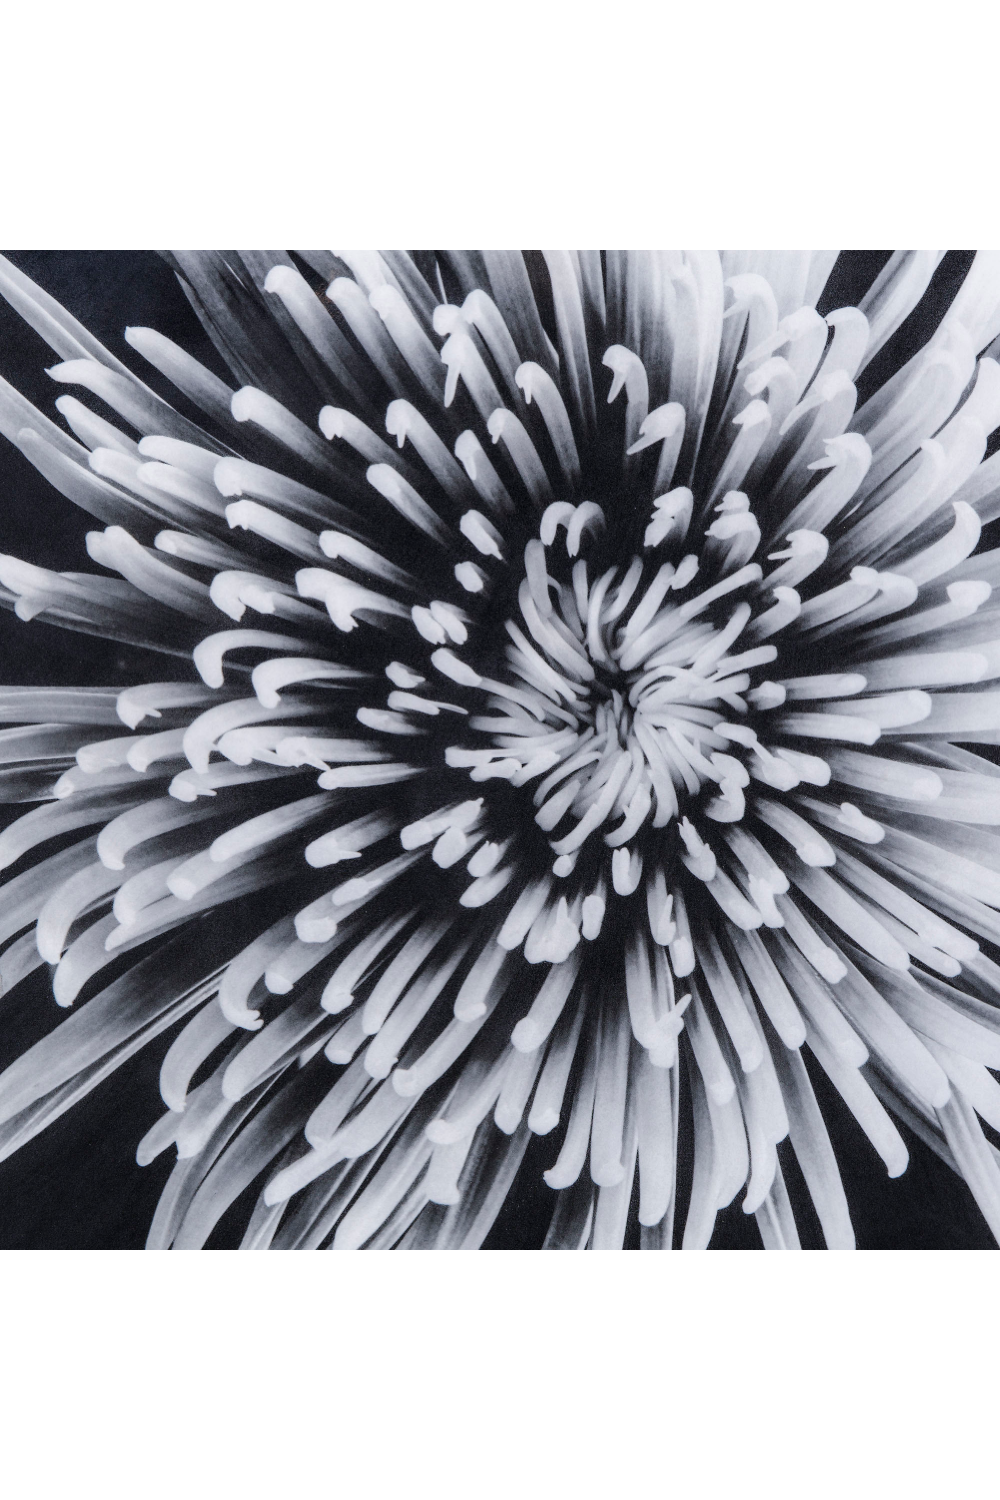 Black And White Epoxy Artwork | Andrew Martin | Oroa.com